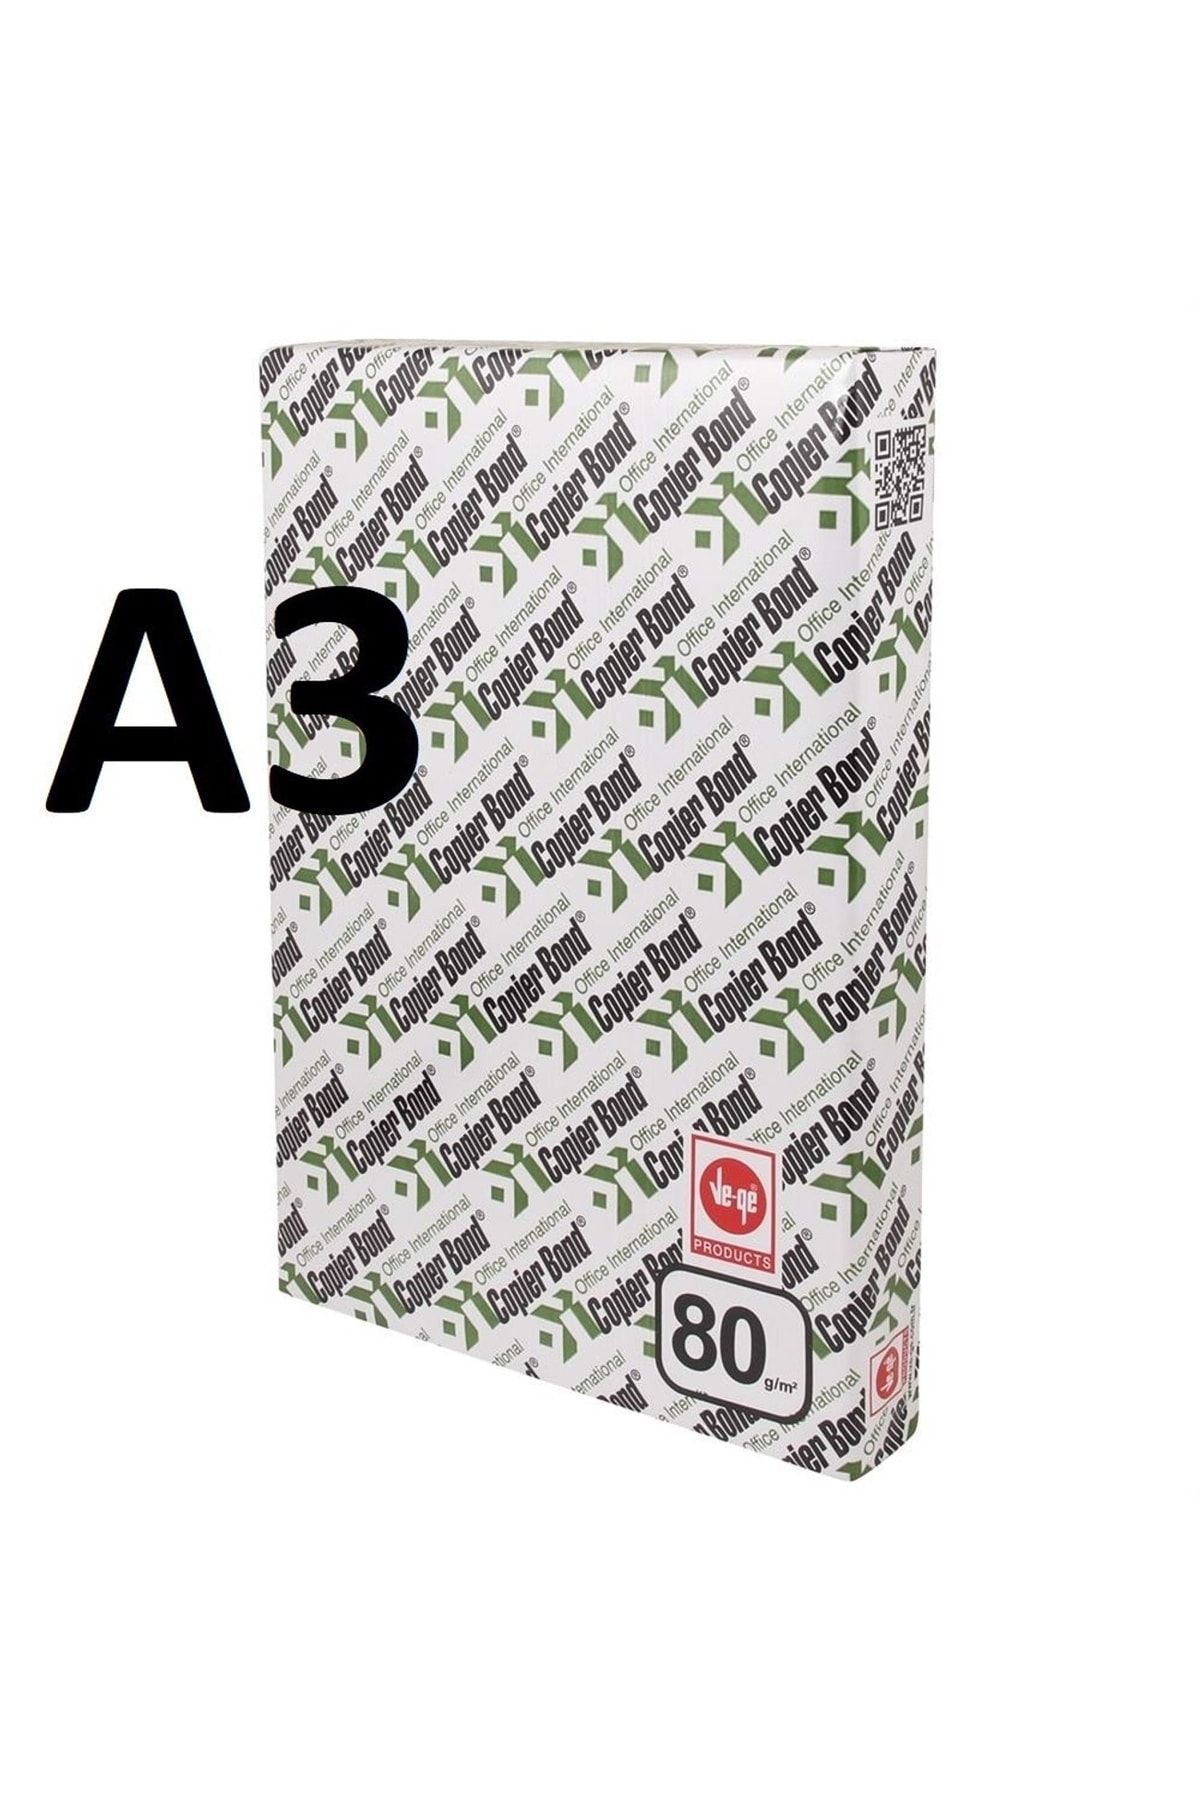 Copierbond A3 80 gr 500 Adet ( 1 Paket) Fotokopi Kağıdıı